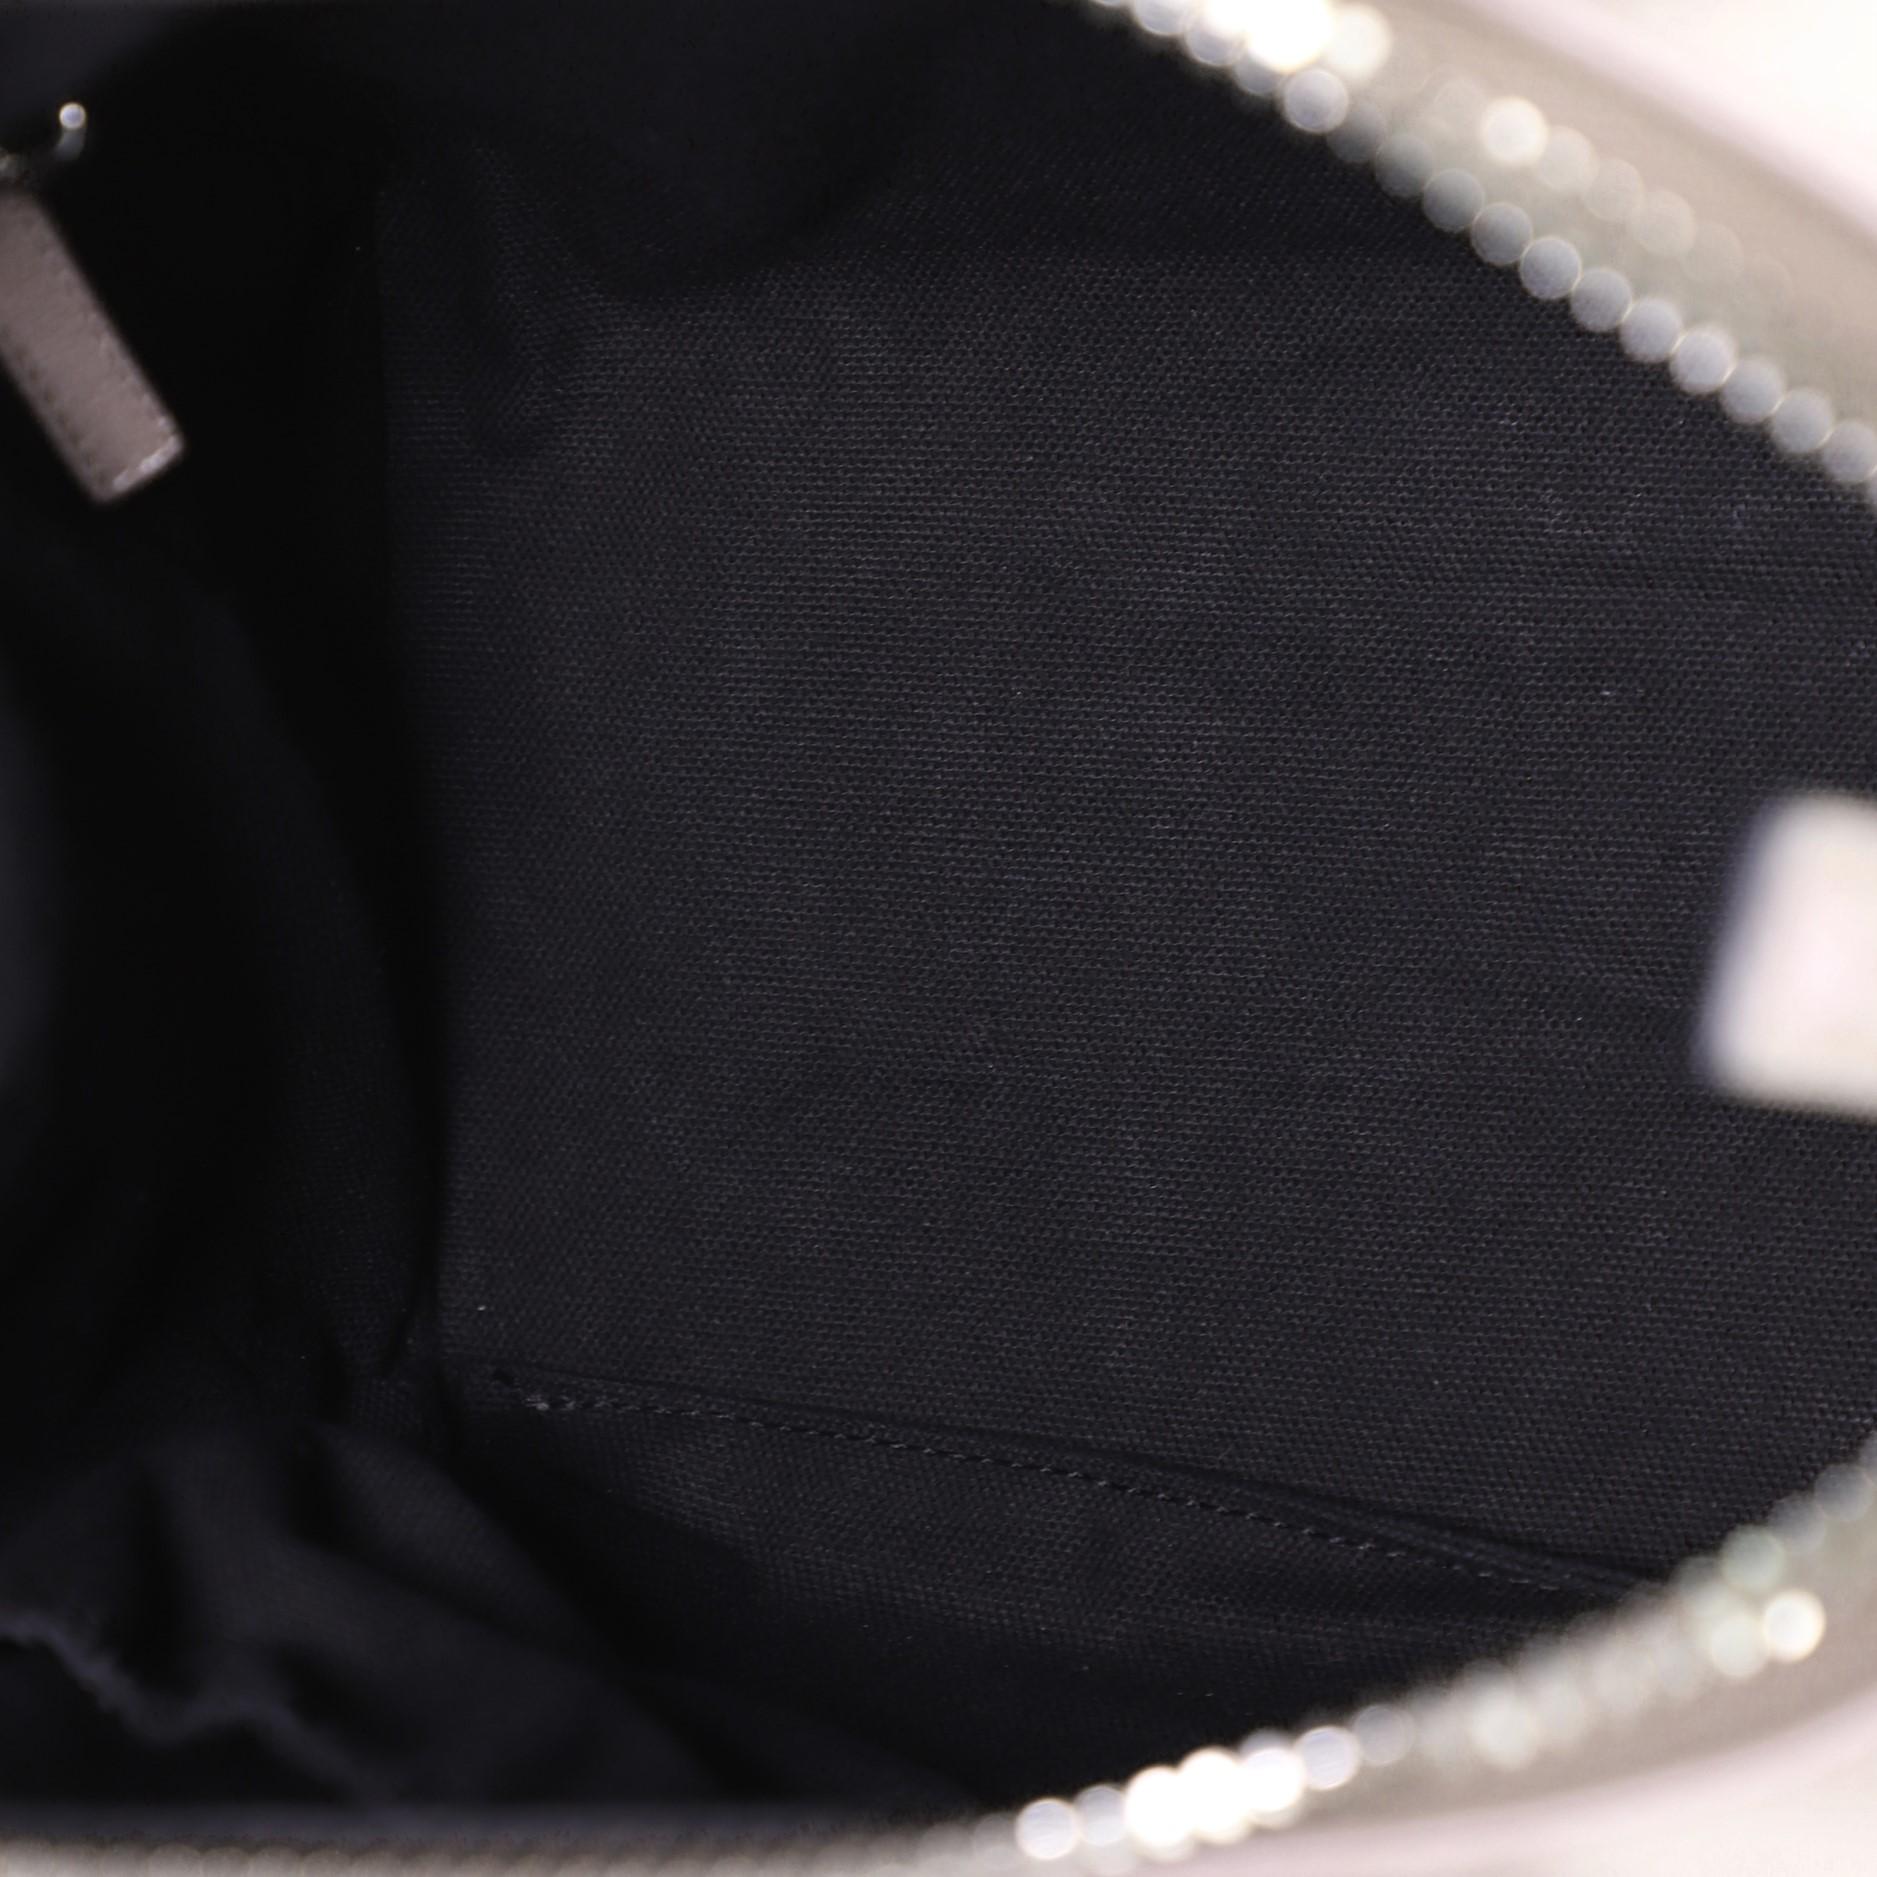 Gray Givenchy Antigona Bag Leather Small